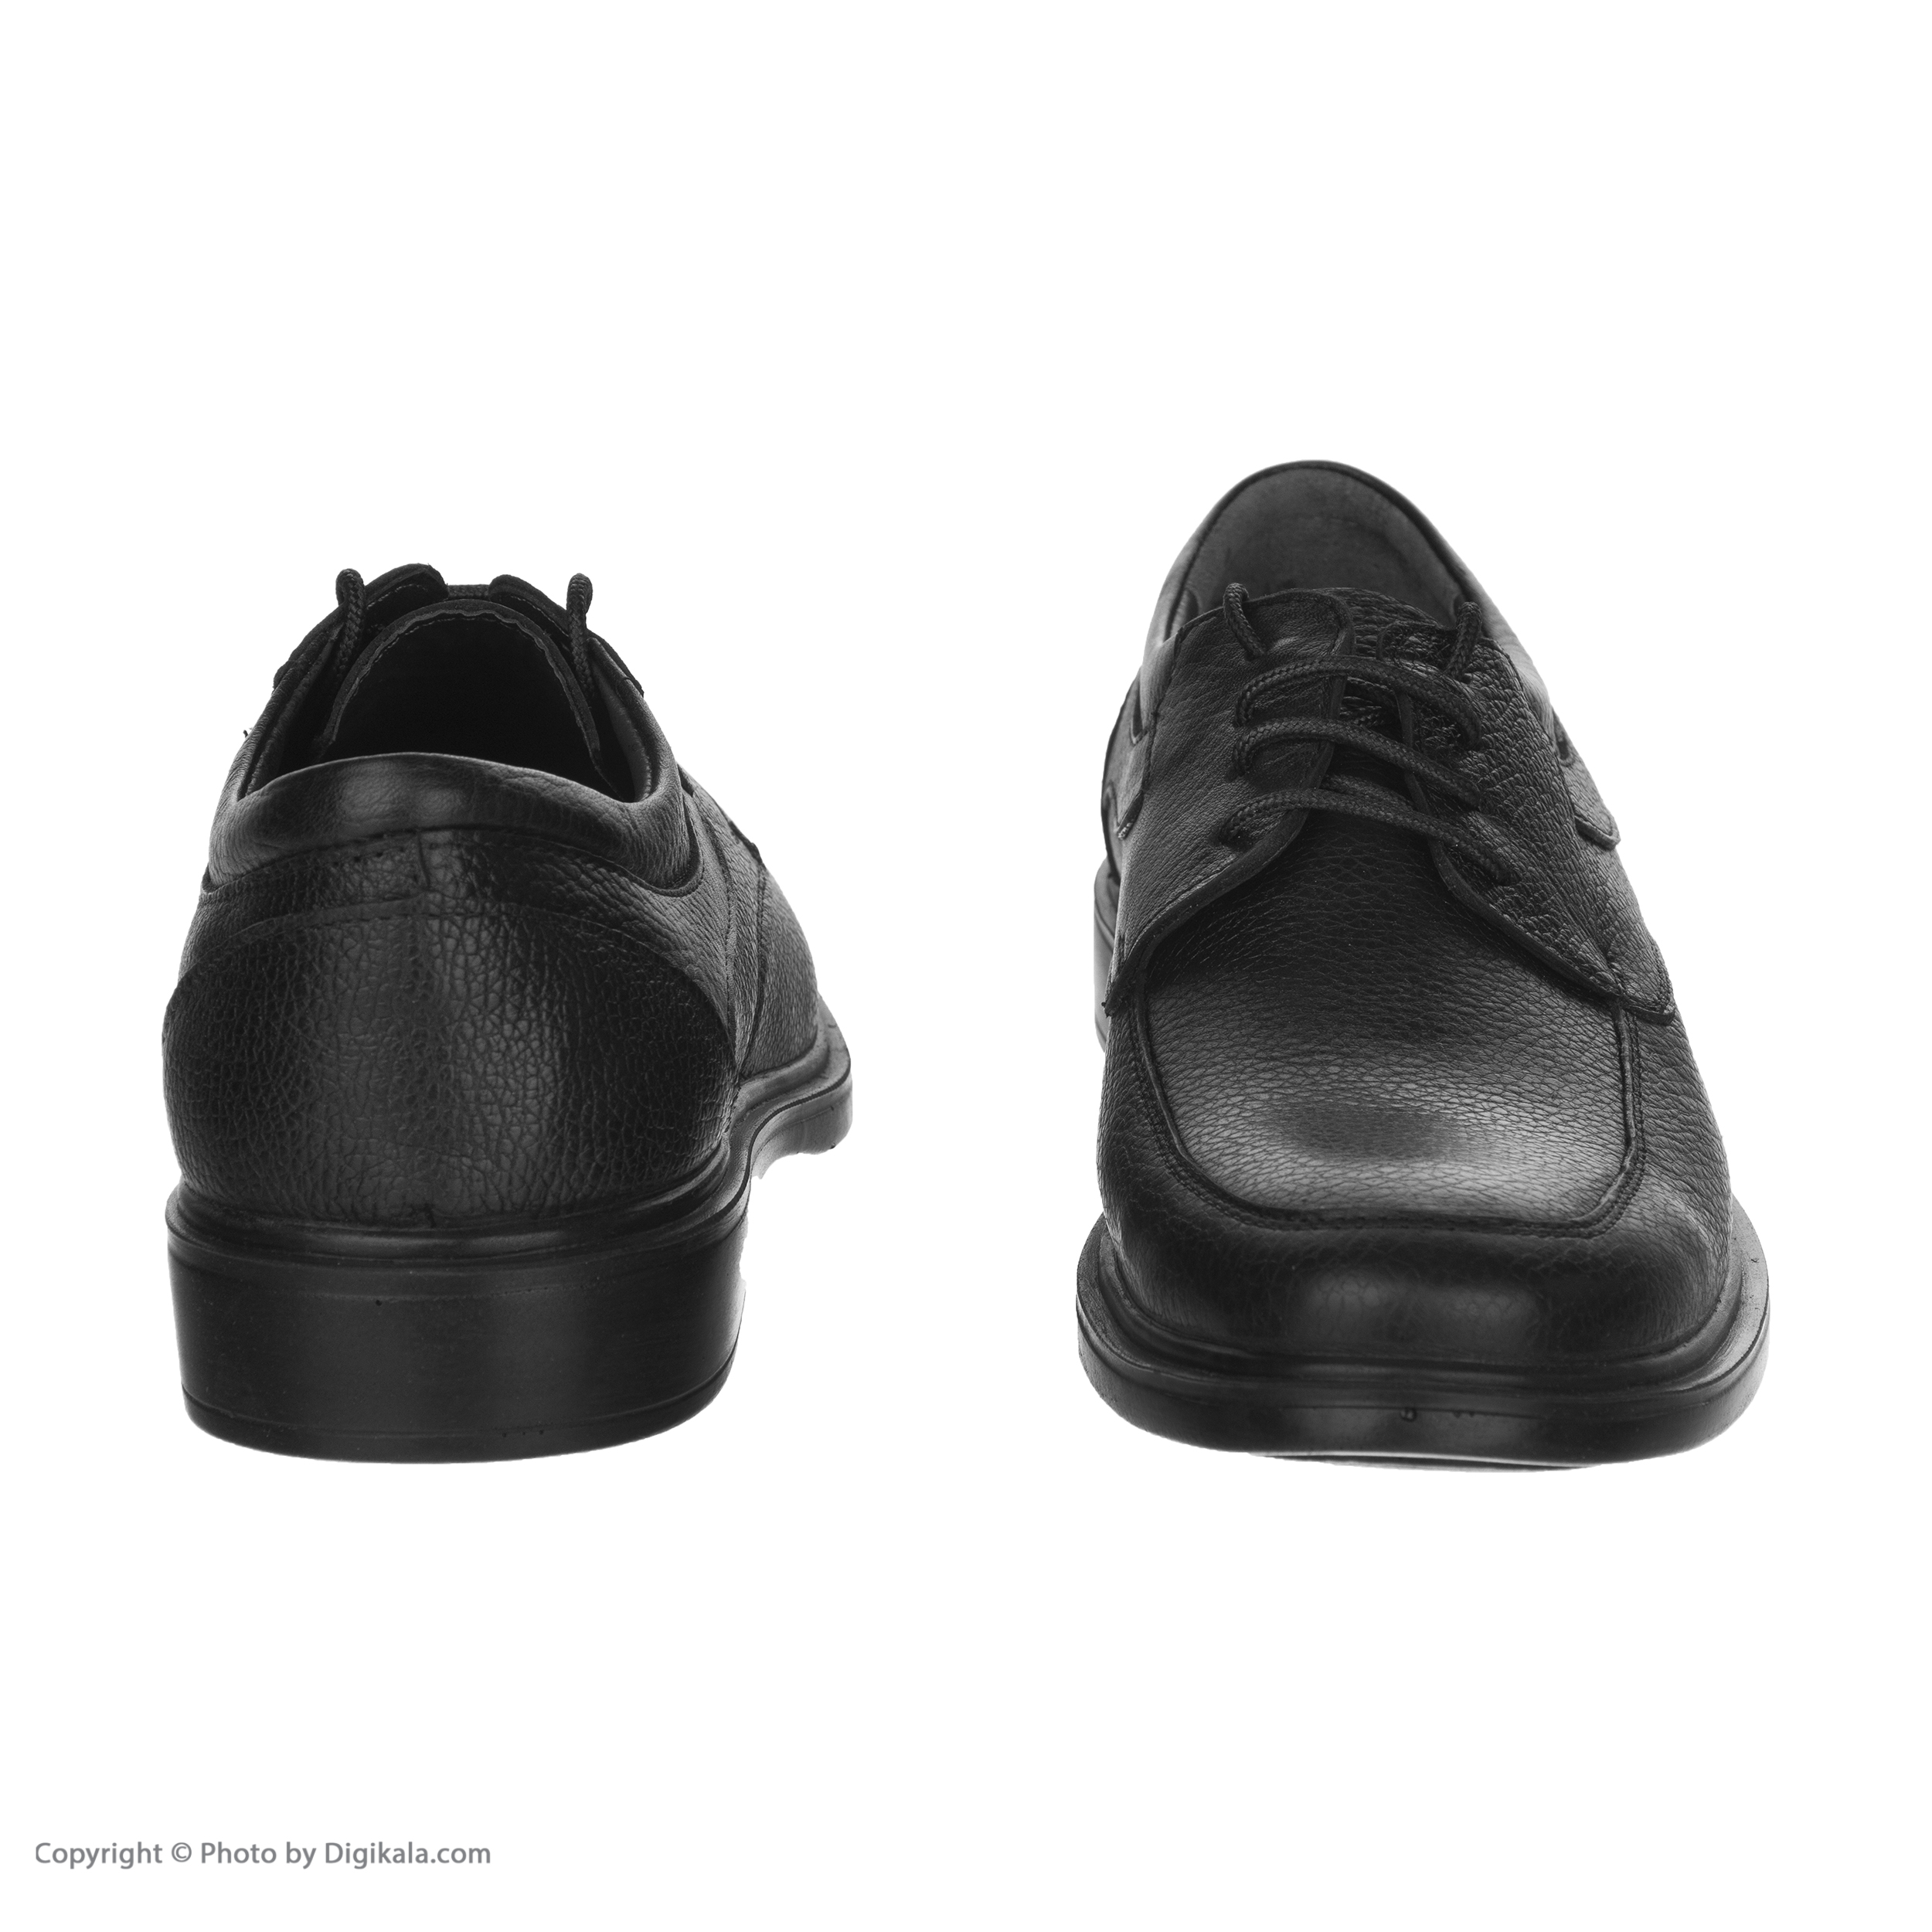  کفش مردانه شیفر مدل 7258B503101